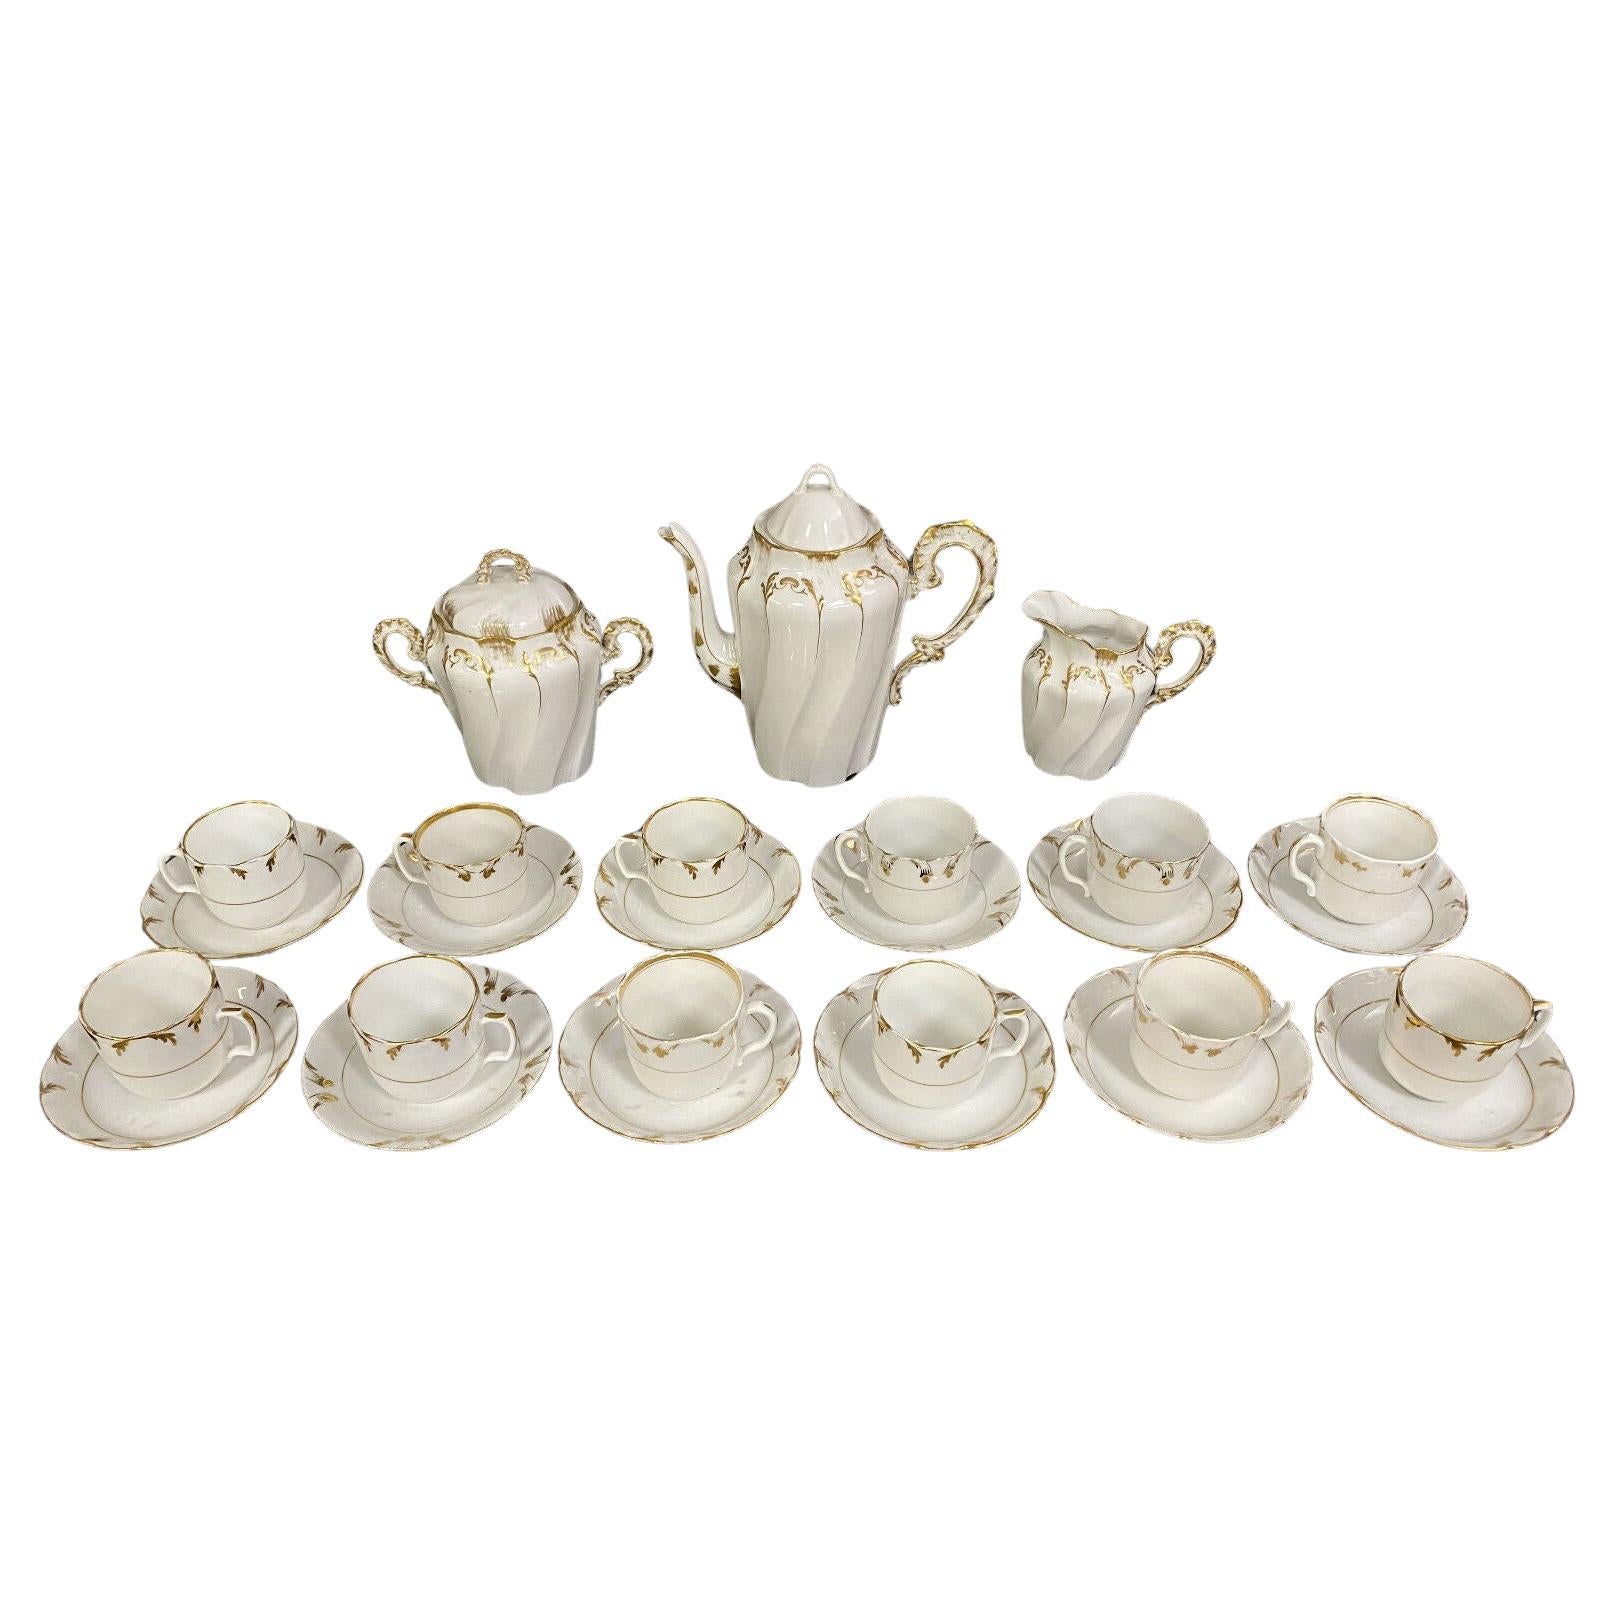 Exquisite 19th Century Lyonnaise Porcelain Coffee Service 1880s -1X43